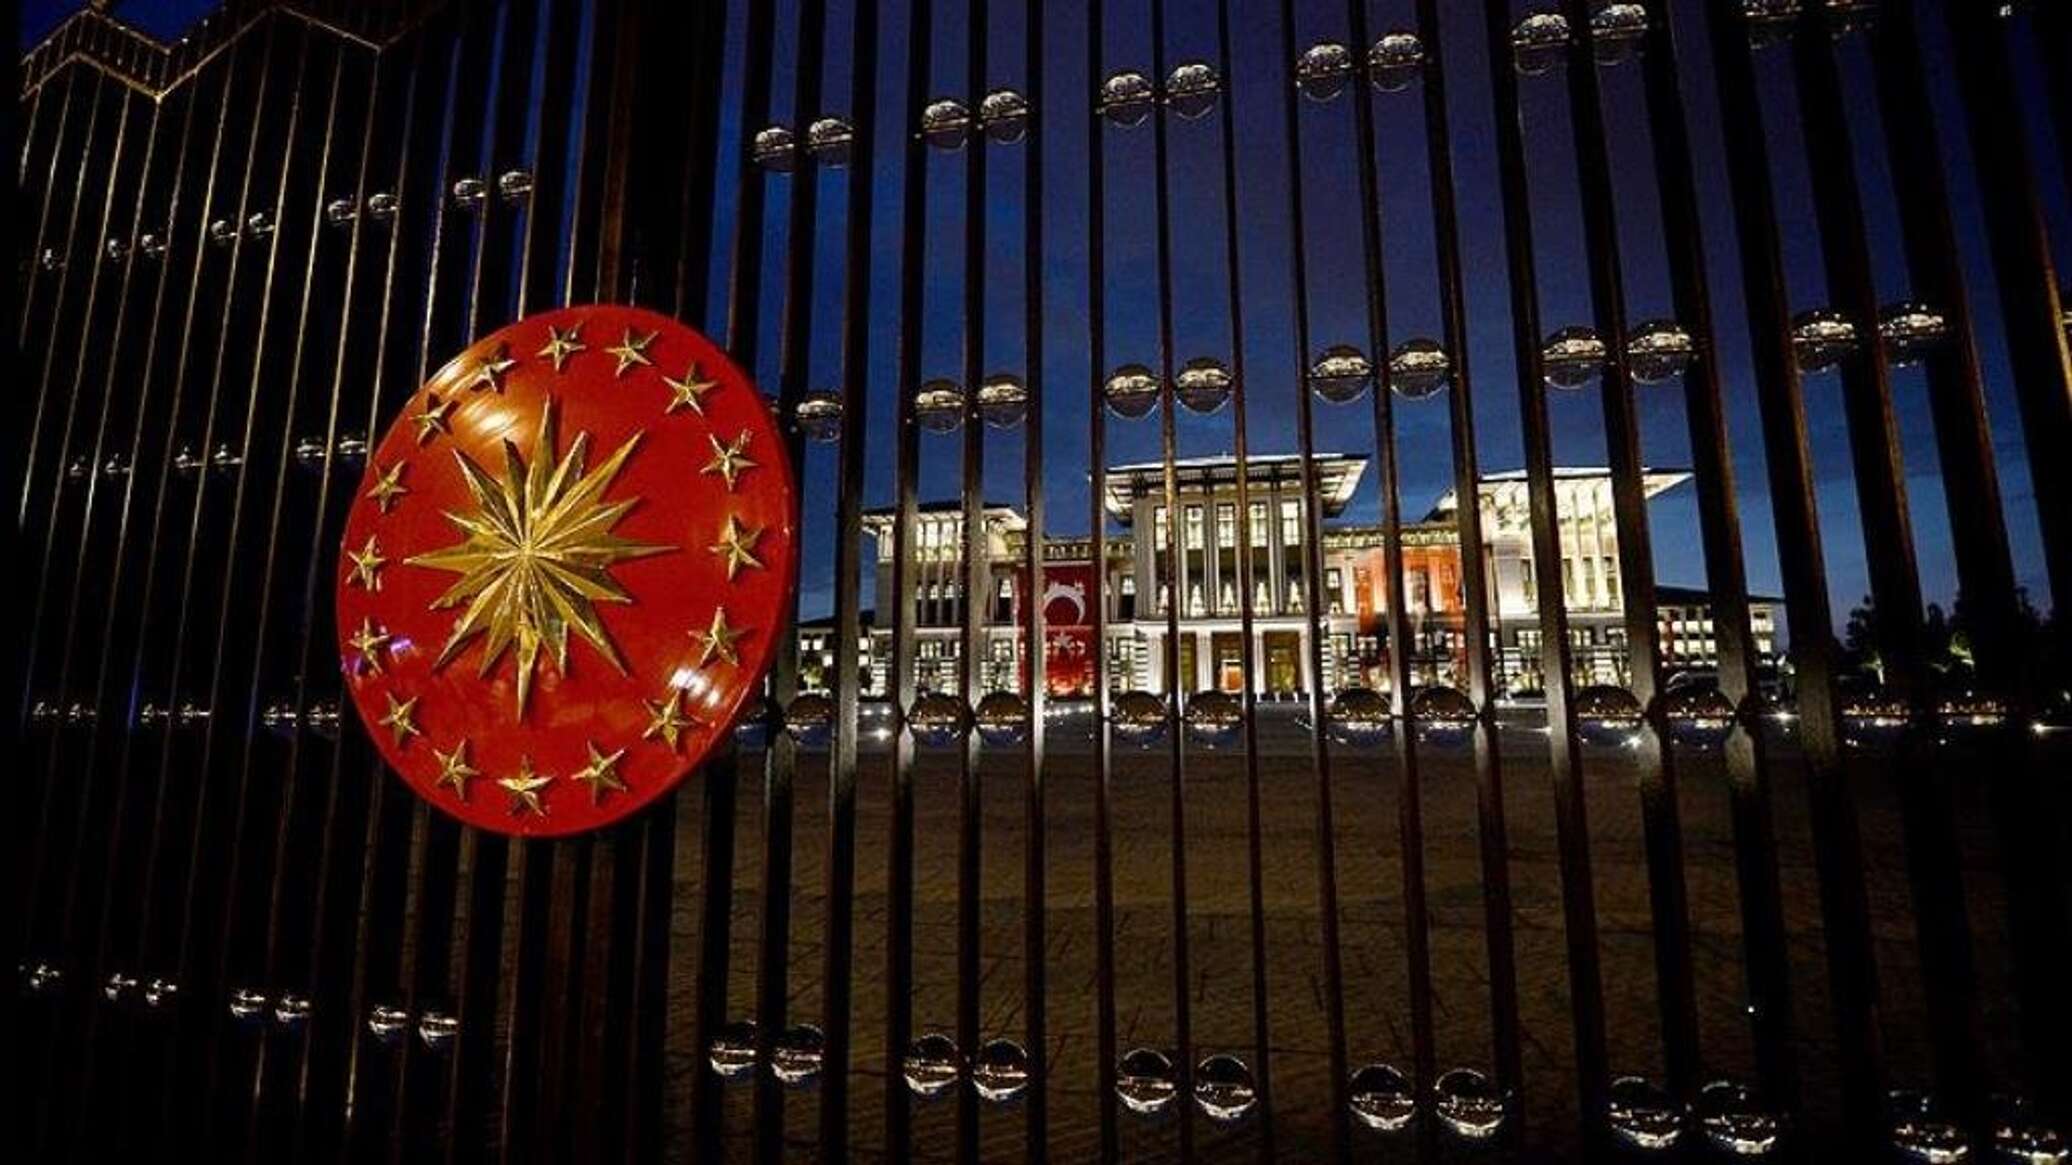 президентский дворец анкара